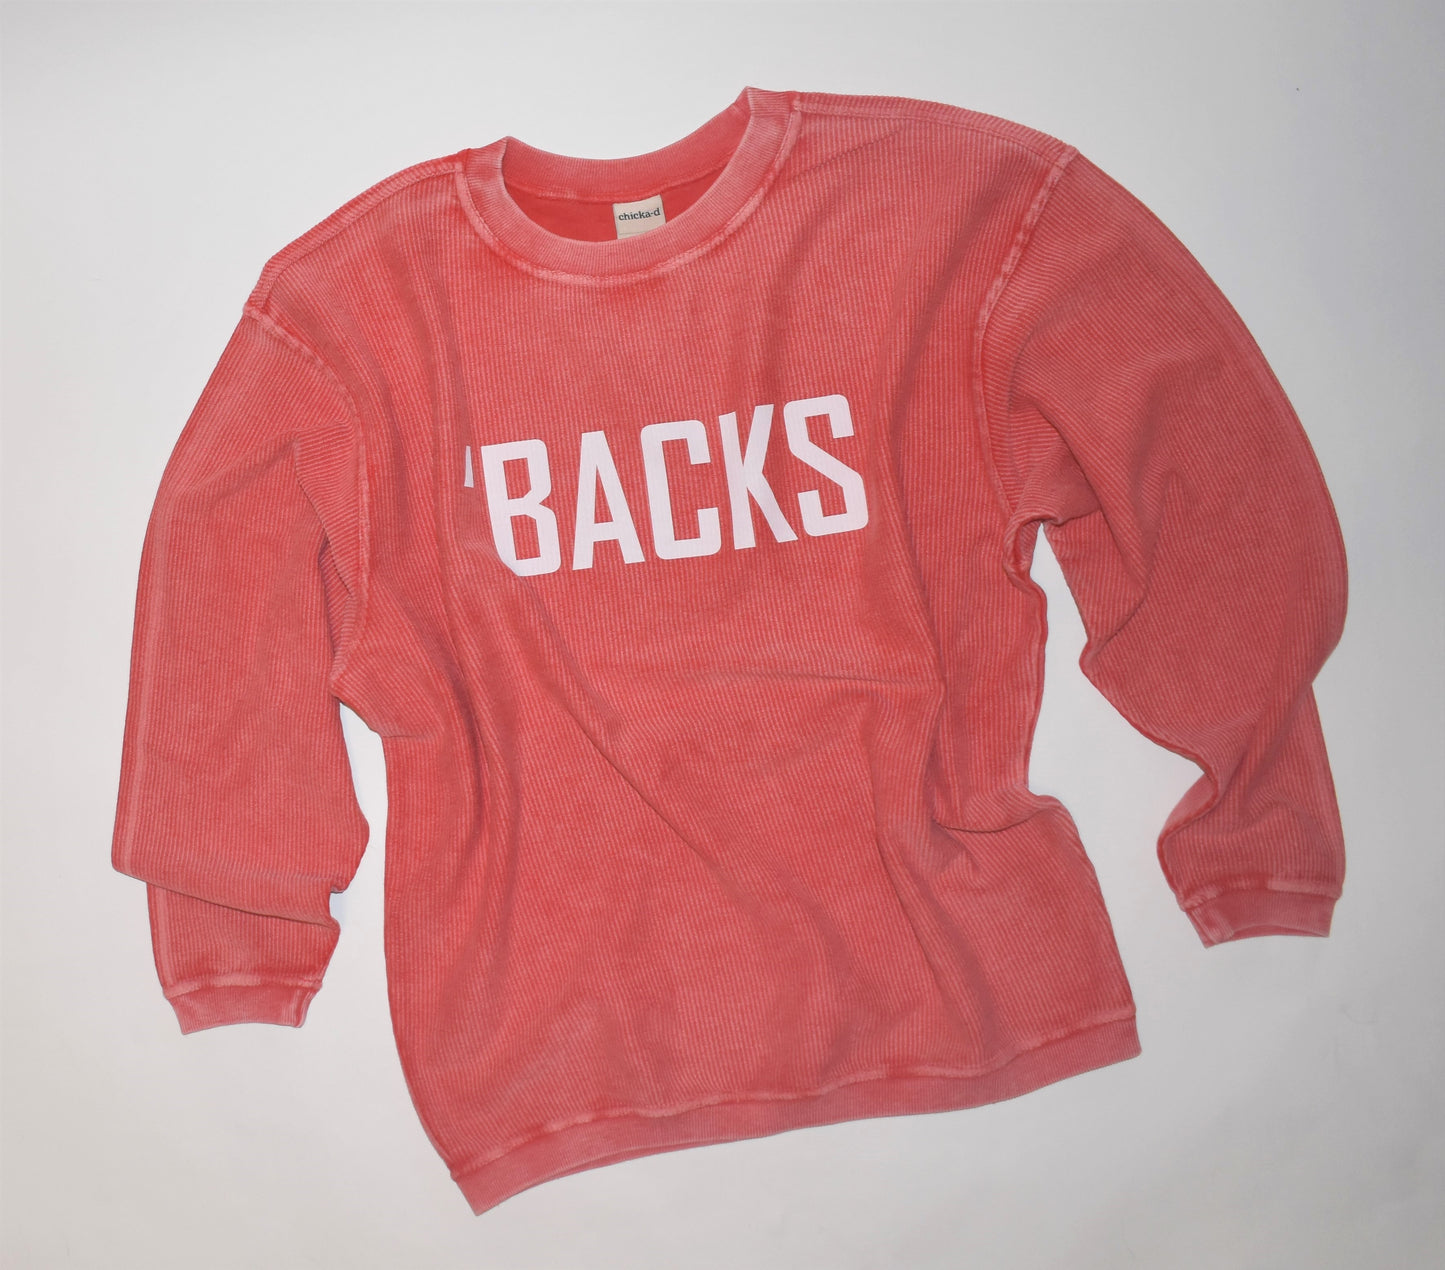 'BACKS corded sweatshirt